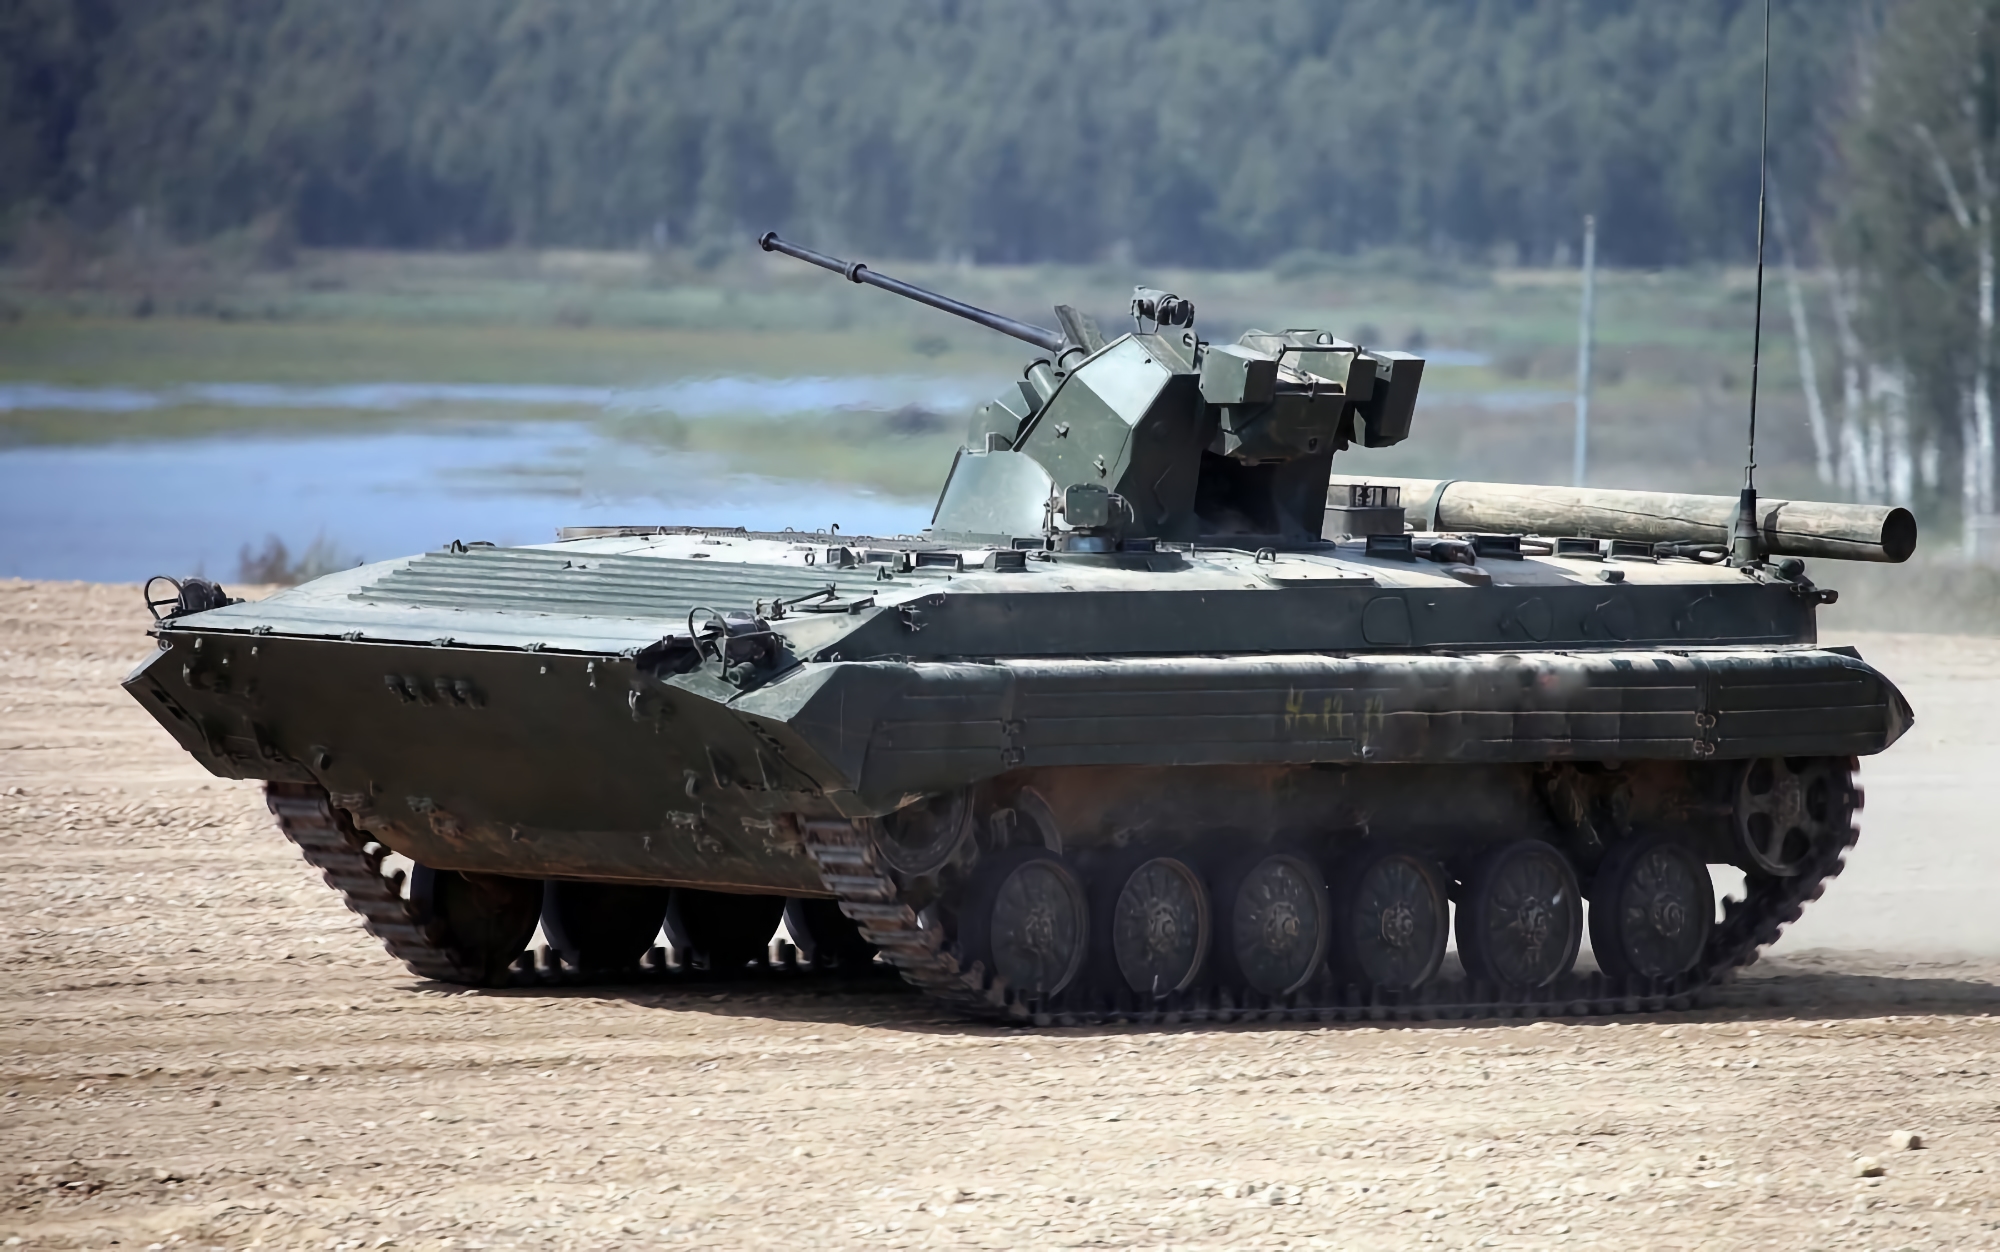 Le forze armate dell'Ucraina hanno distrutto il moderno BMP-1AM russo "Basurmanin"